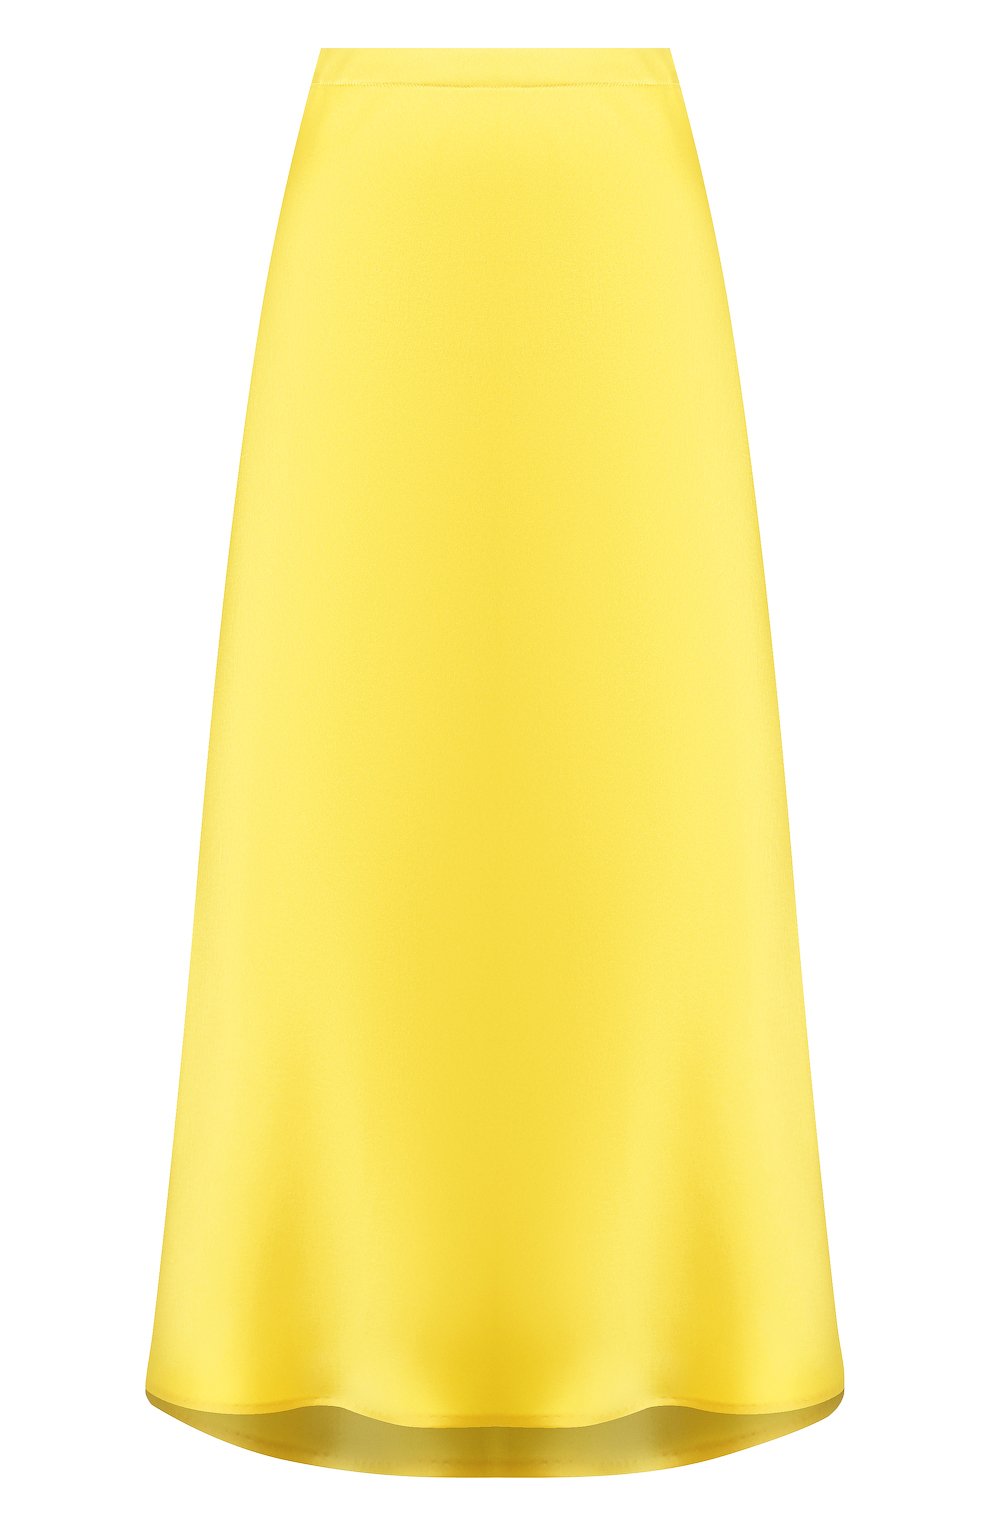 Женская юбка-миди ESCADA желтого цвета, арт. 5032905 | Фото 1 (Материал внешний: Синтетический материал; Женское Кросс-КТ: Юбка-одежда; Длина Ж (юбки, платья, шорты): Миди)